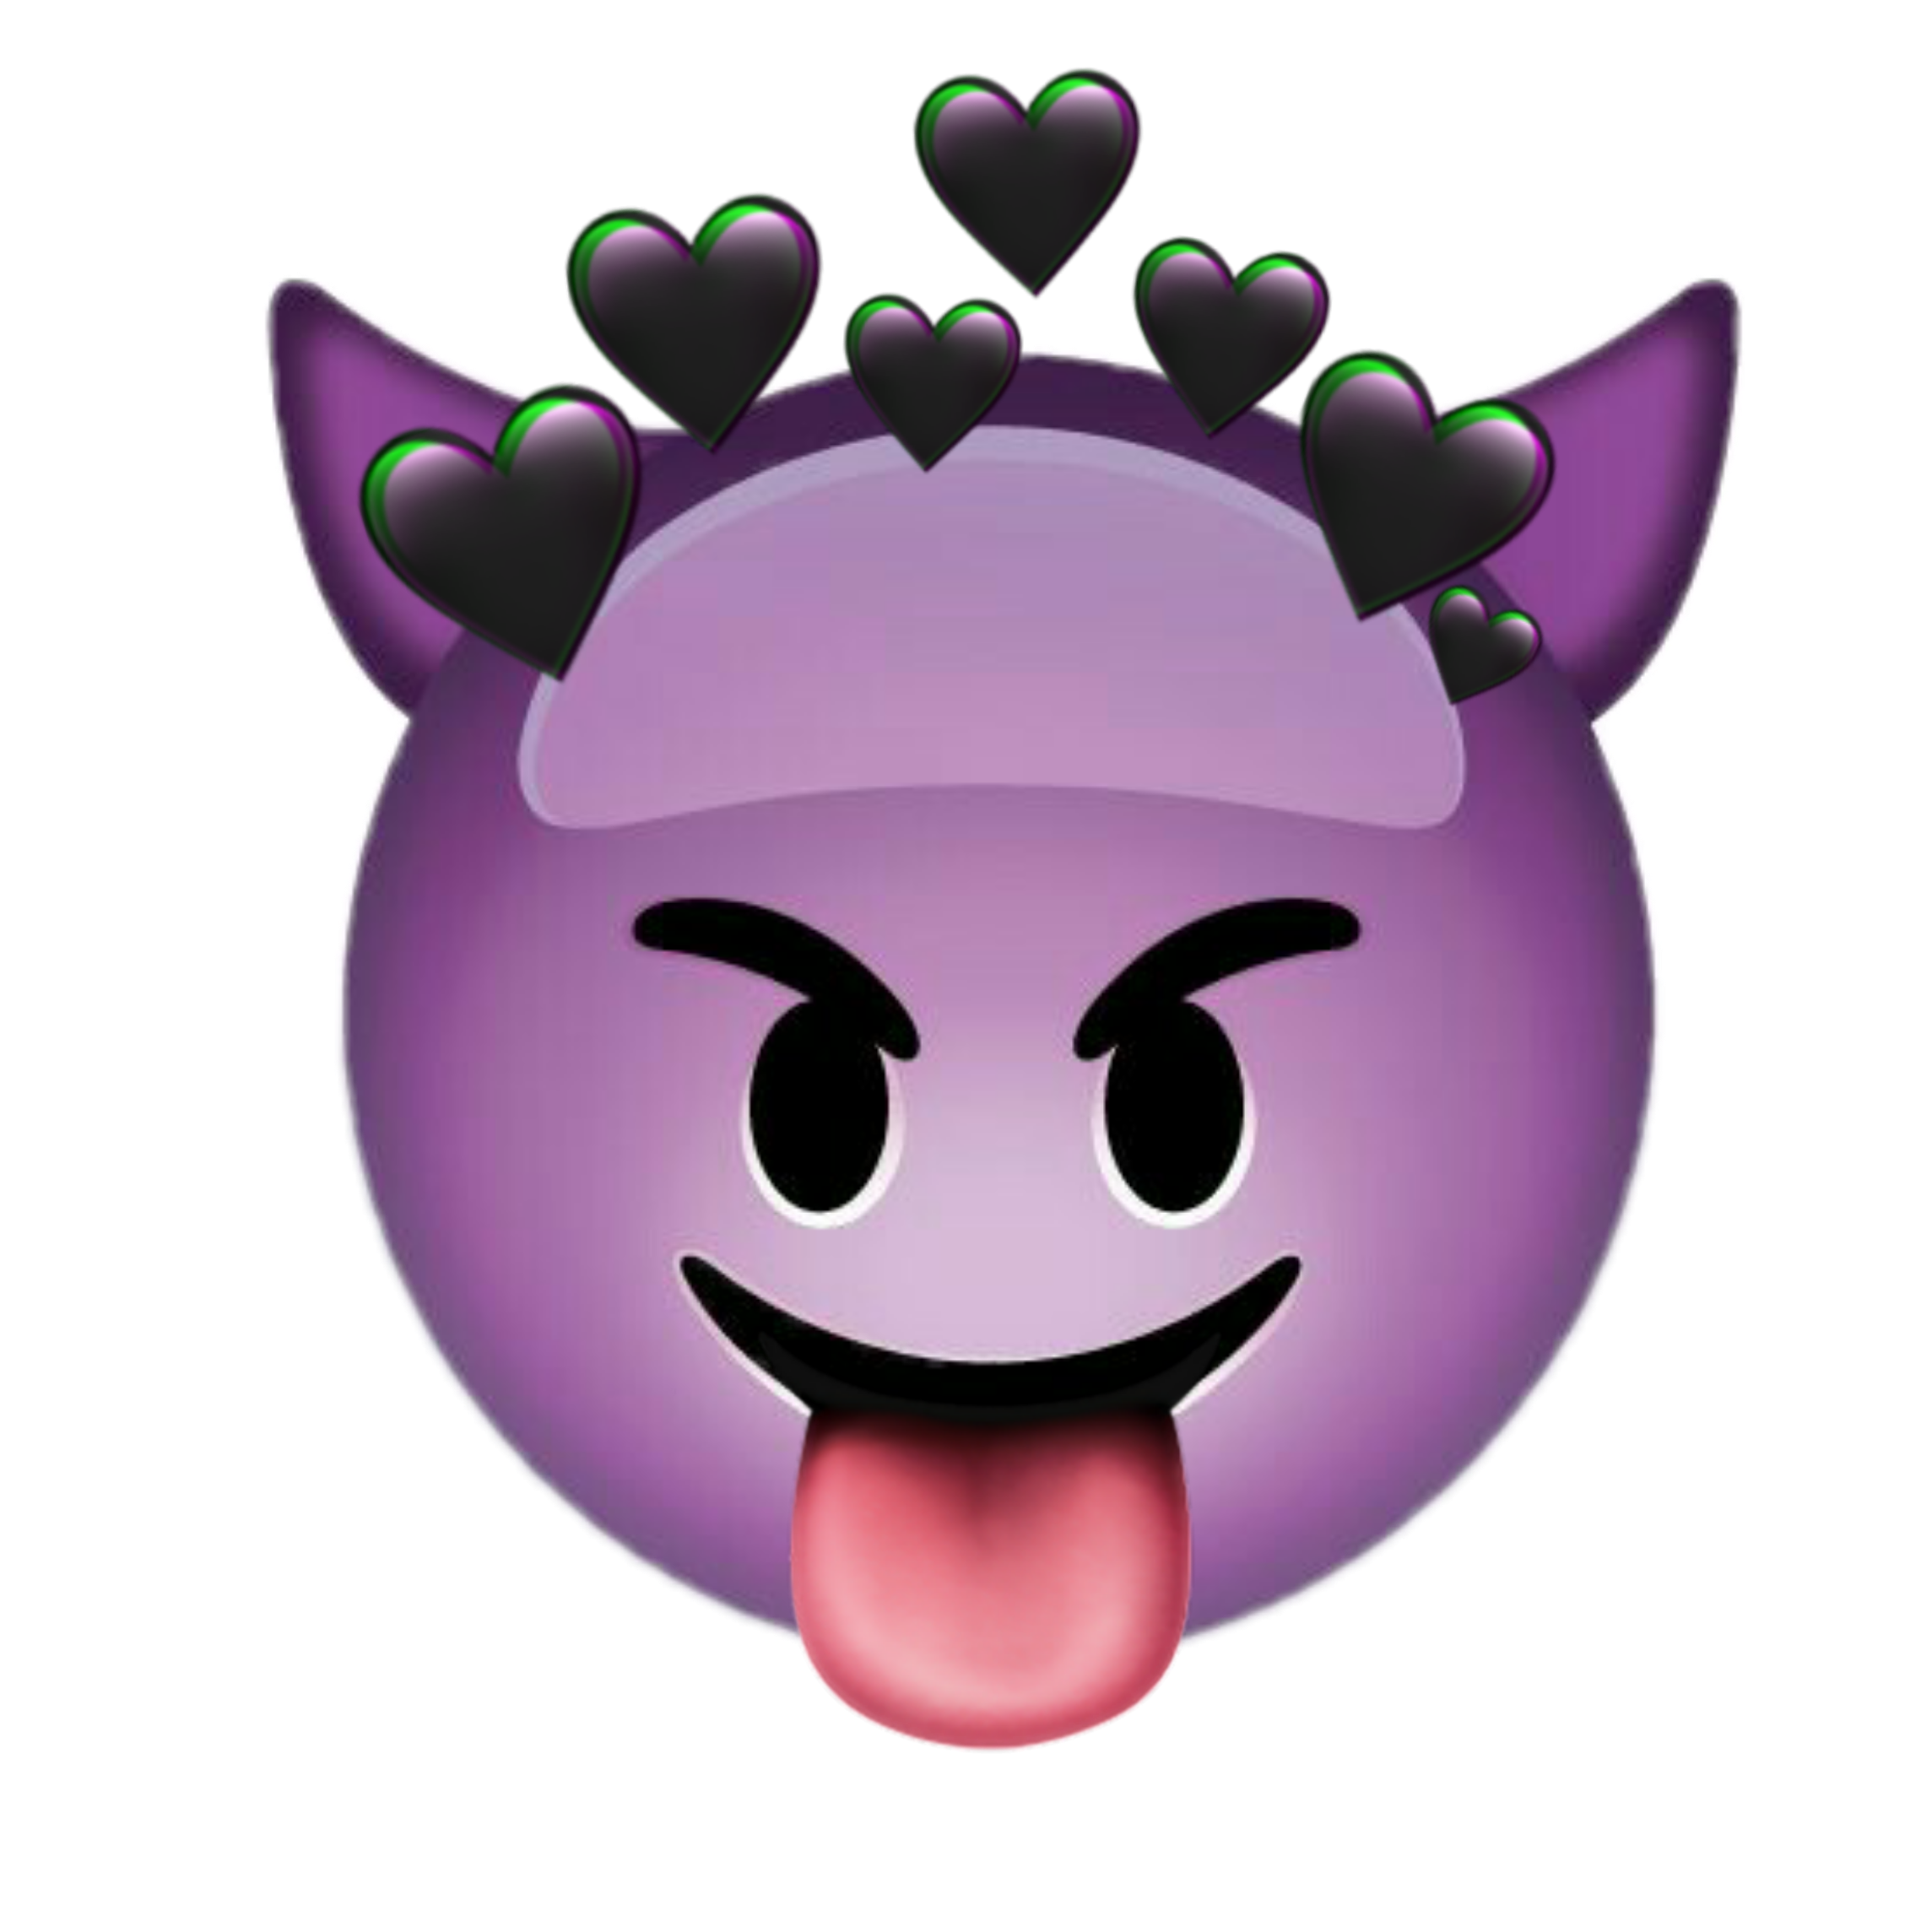 Demon emoji. ЭМОДЖИ демон фиолетовый. Смайлик демона. Смайлик дьявола. ЭМОДЖИ дьявол.